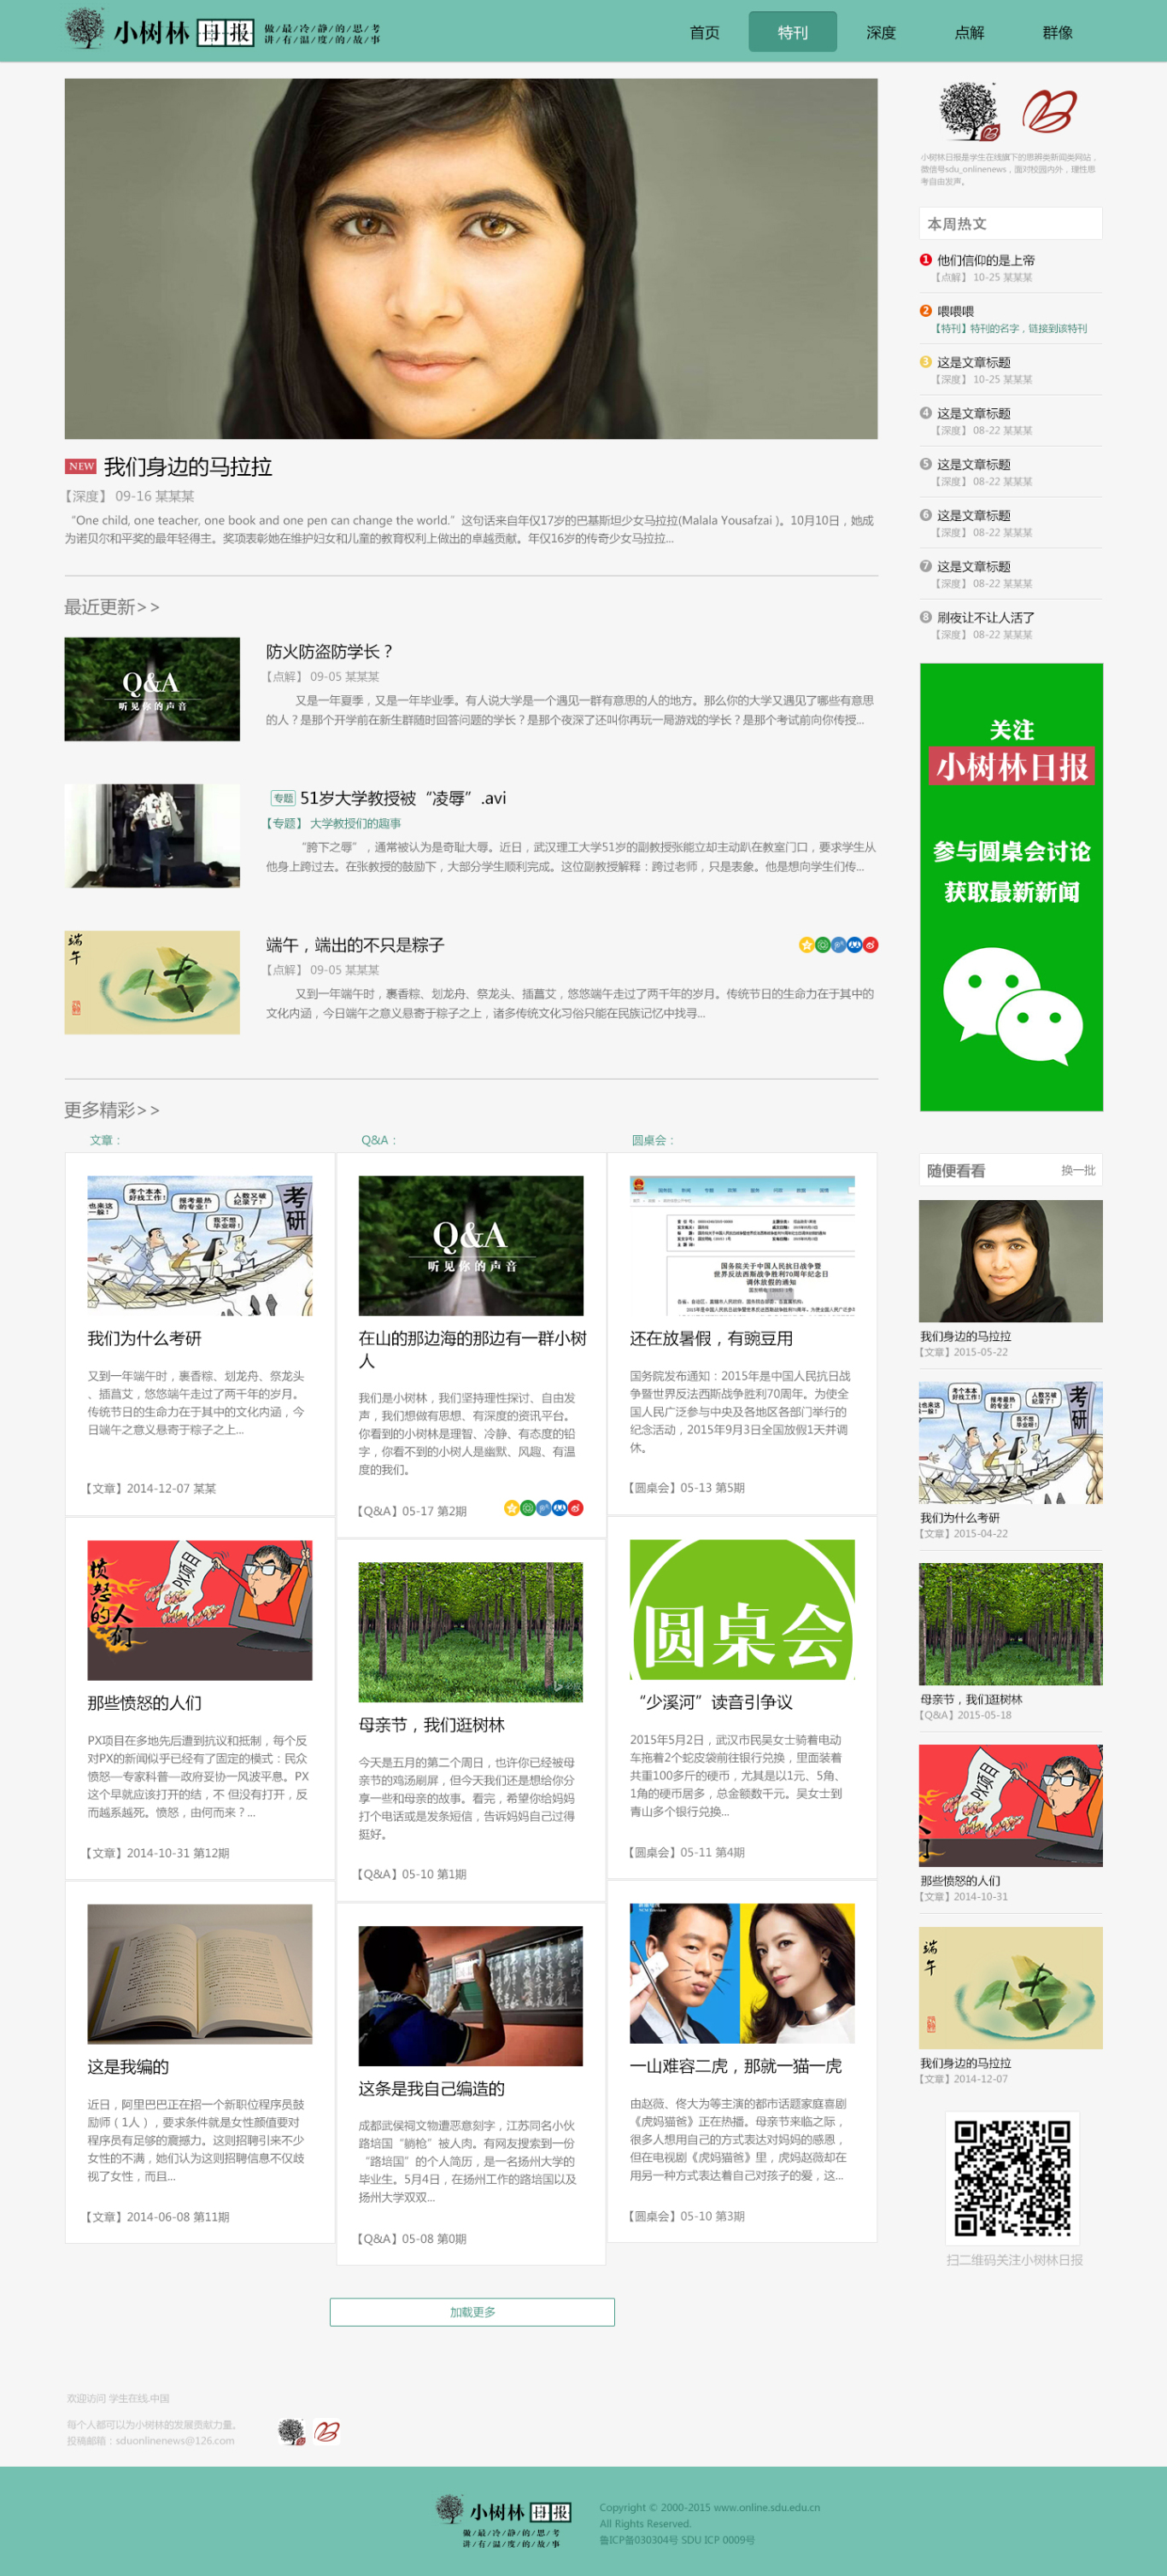  小樹林日報的網頁設計圖0